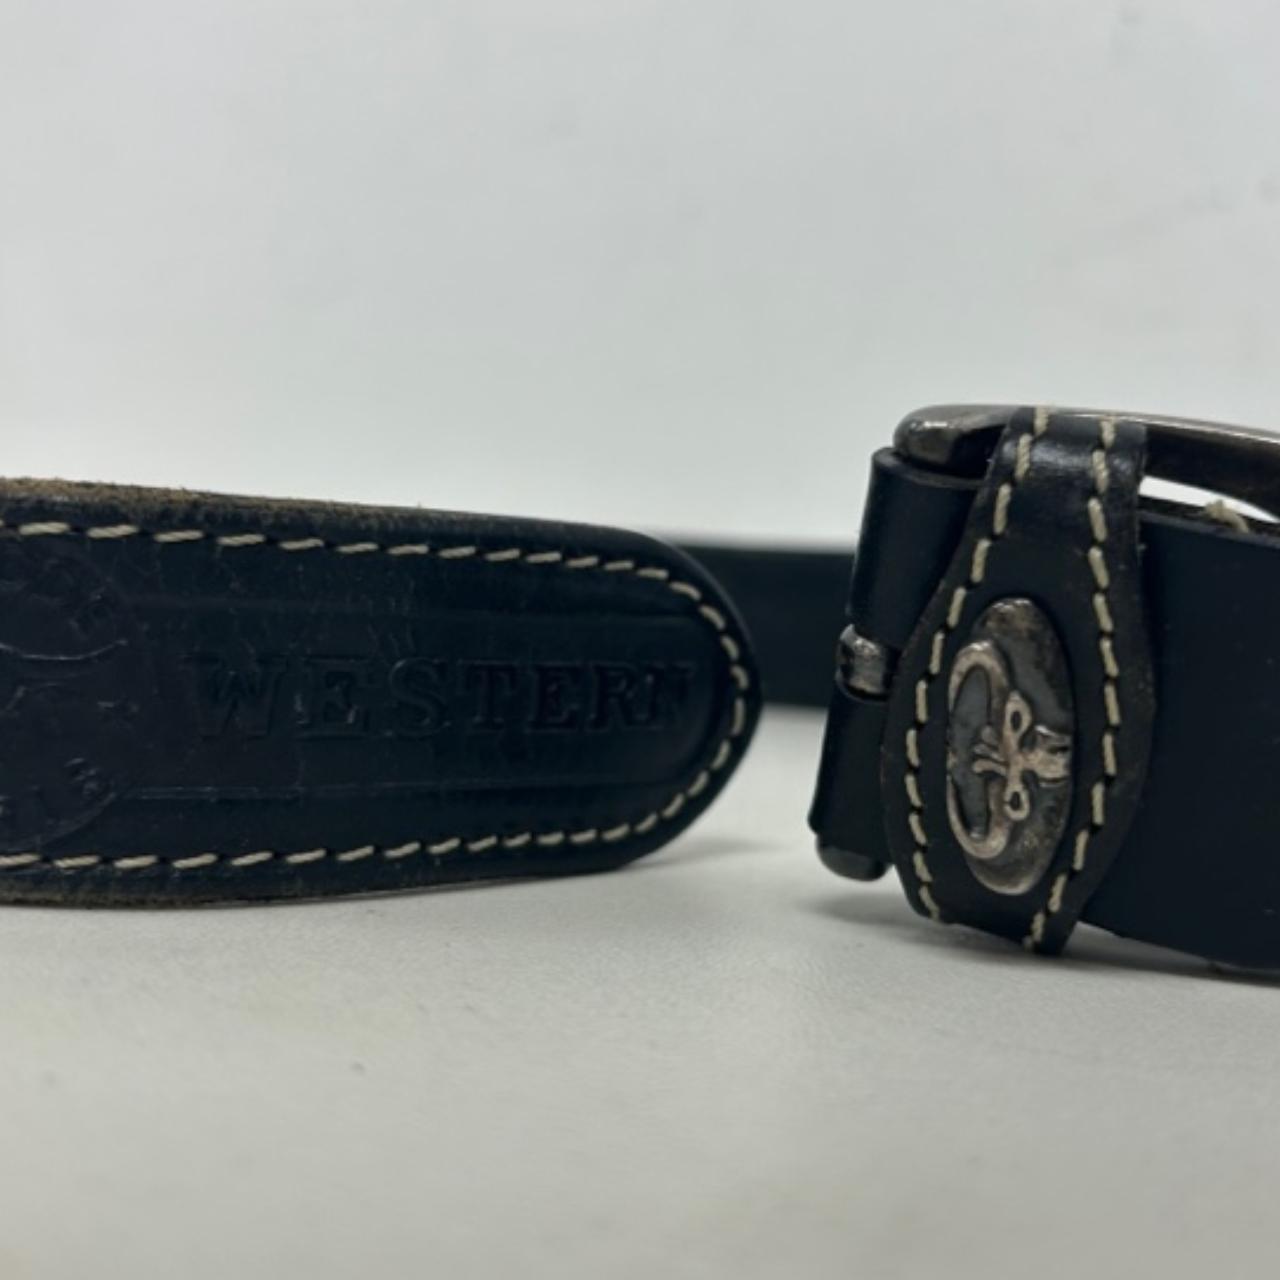 Western leather belt 34/85 v1a3 p328 - Depop